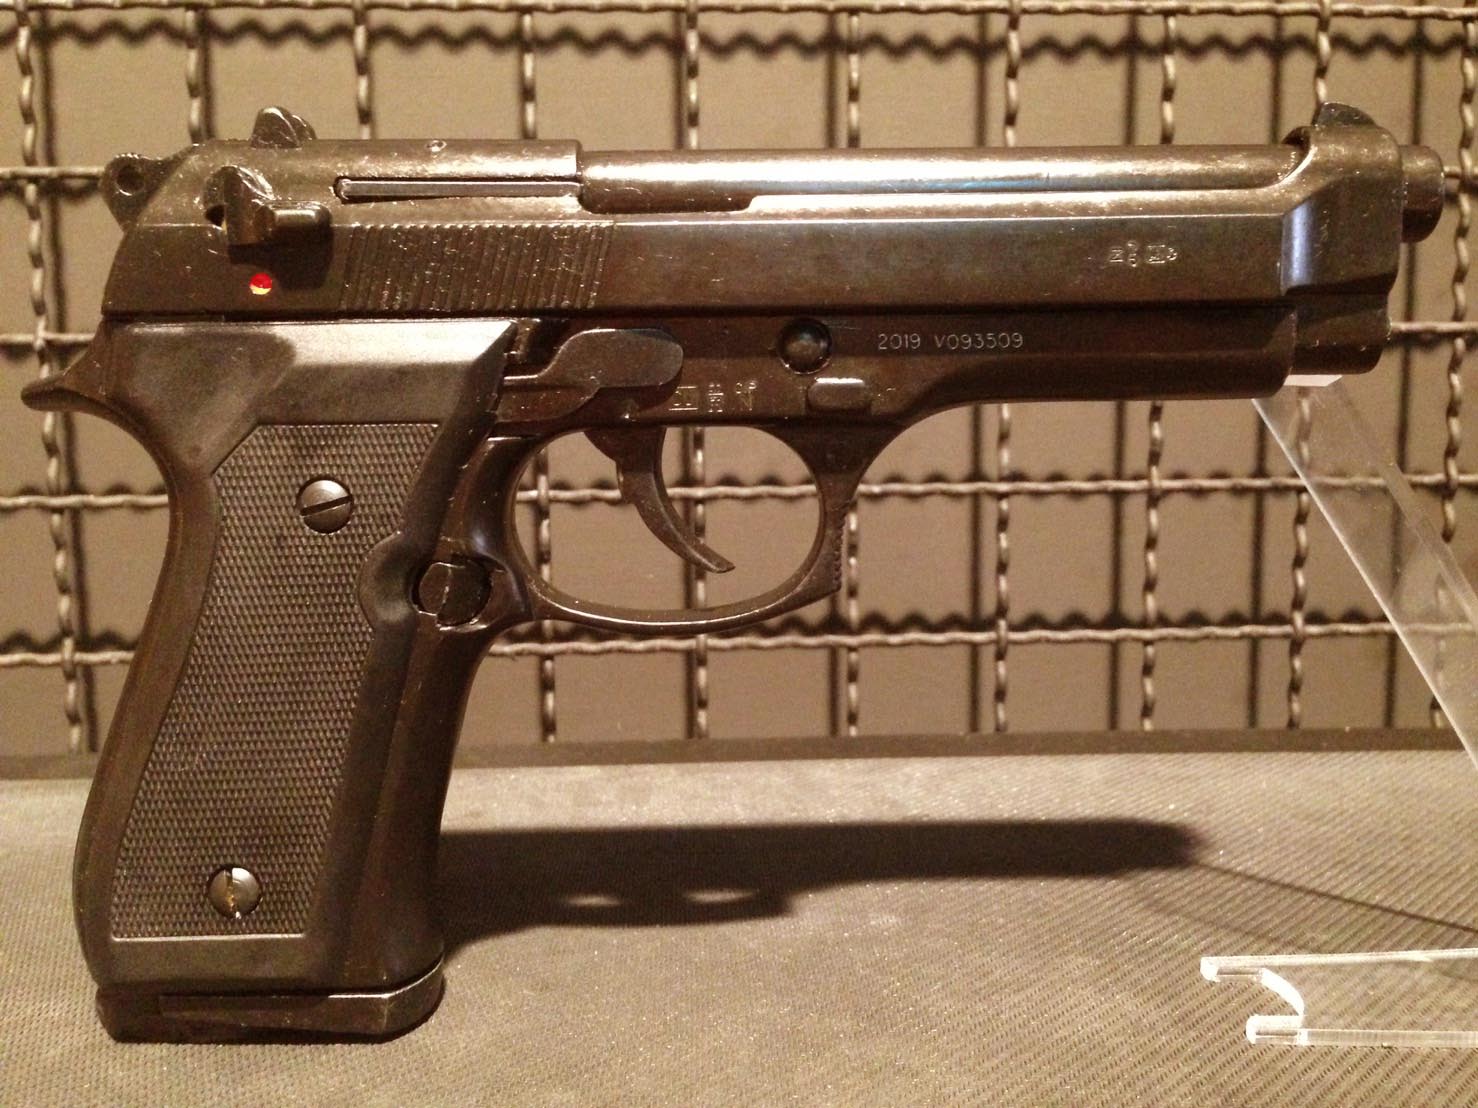 มุมมองเพิ่มเติมของสินค้า Blank แบลงค์กัน M92 fs ปืนสุดคลาสสิคยุค 90 หรือที่เรียกขานกันว่า ปืนพระเอก ต้นตำรับจากอิตาลี สีรมดำด้าน สวย ดุ ดิบ คลาสสิค Made in Italy